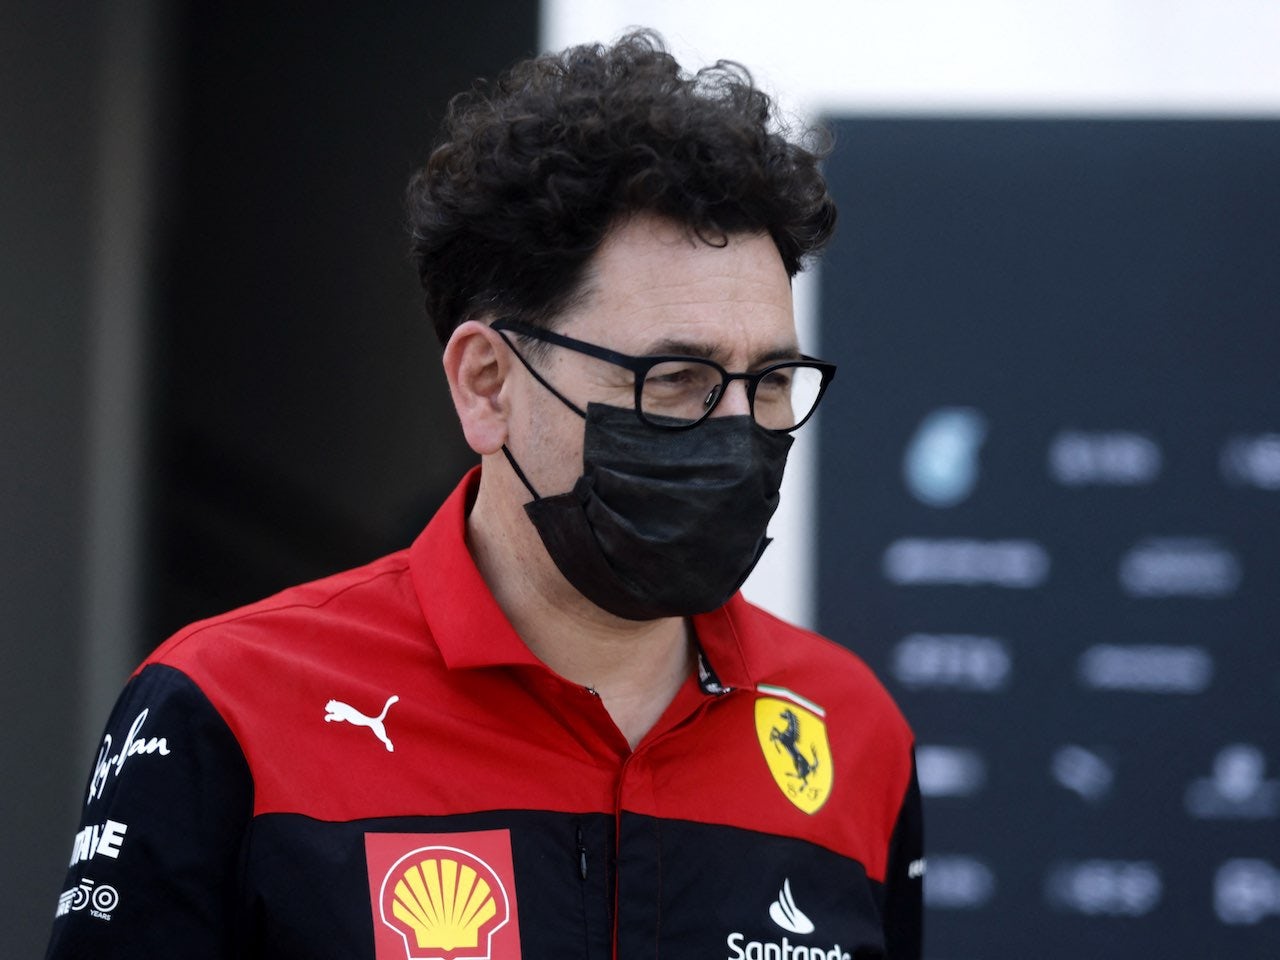 Ferrari's engine has caught up - Binotto